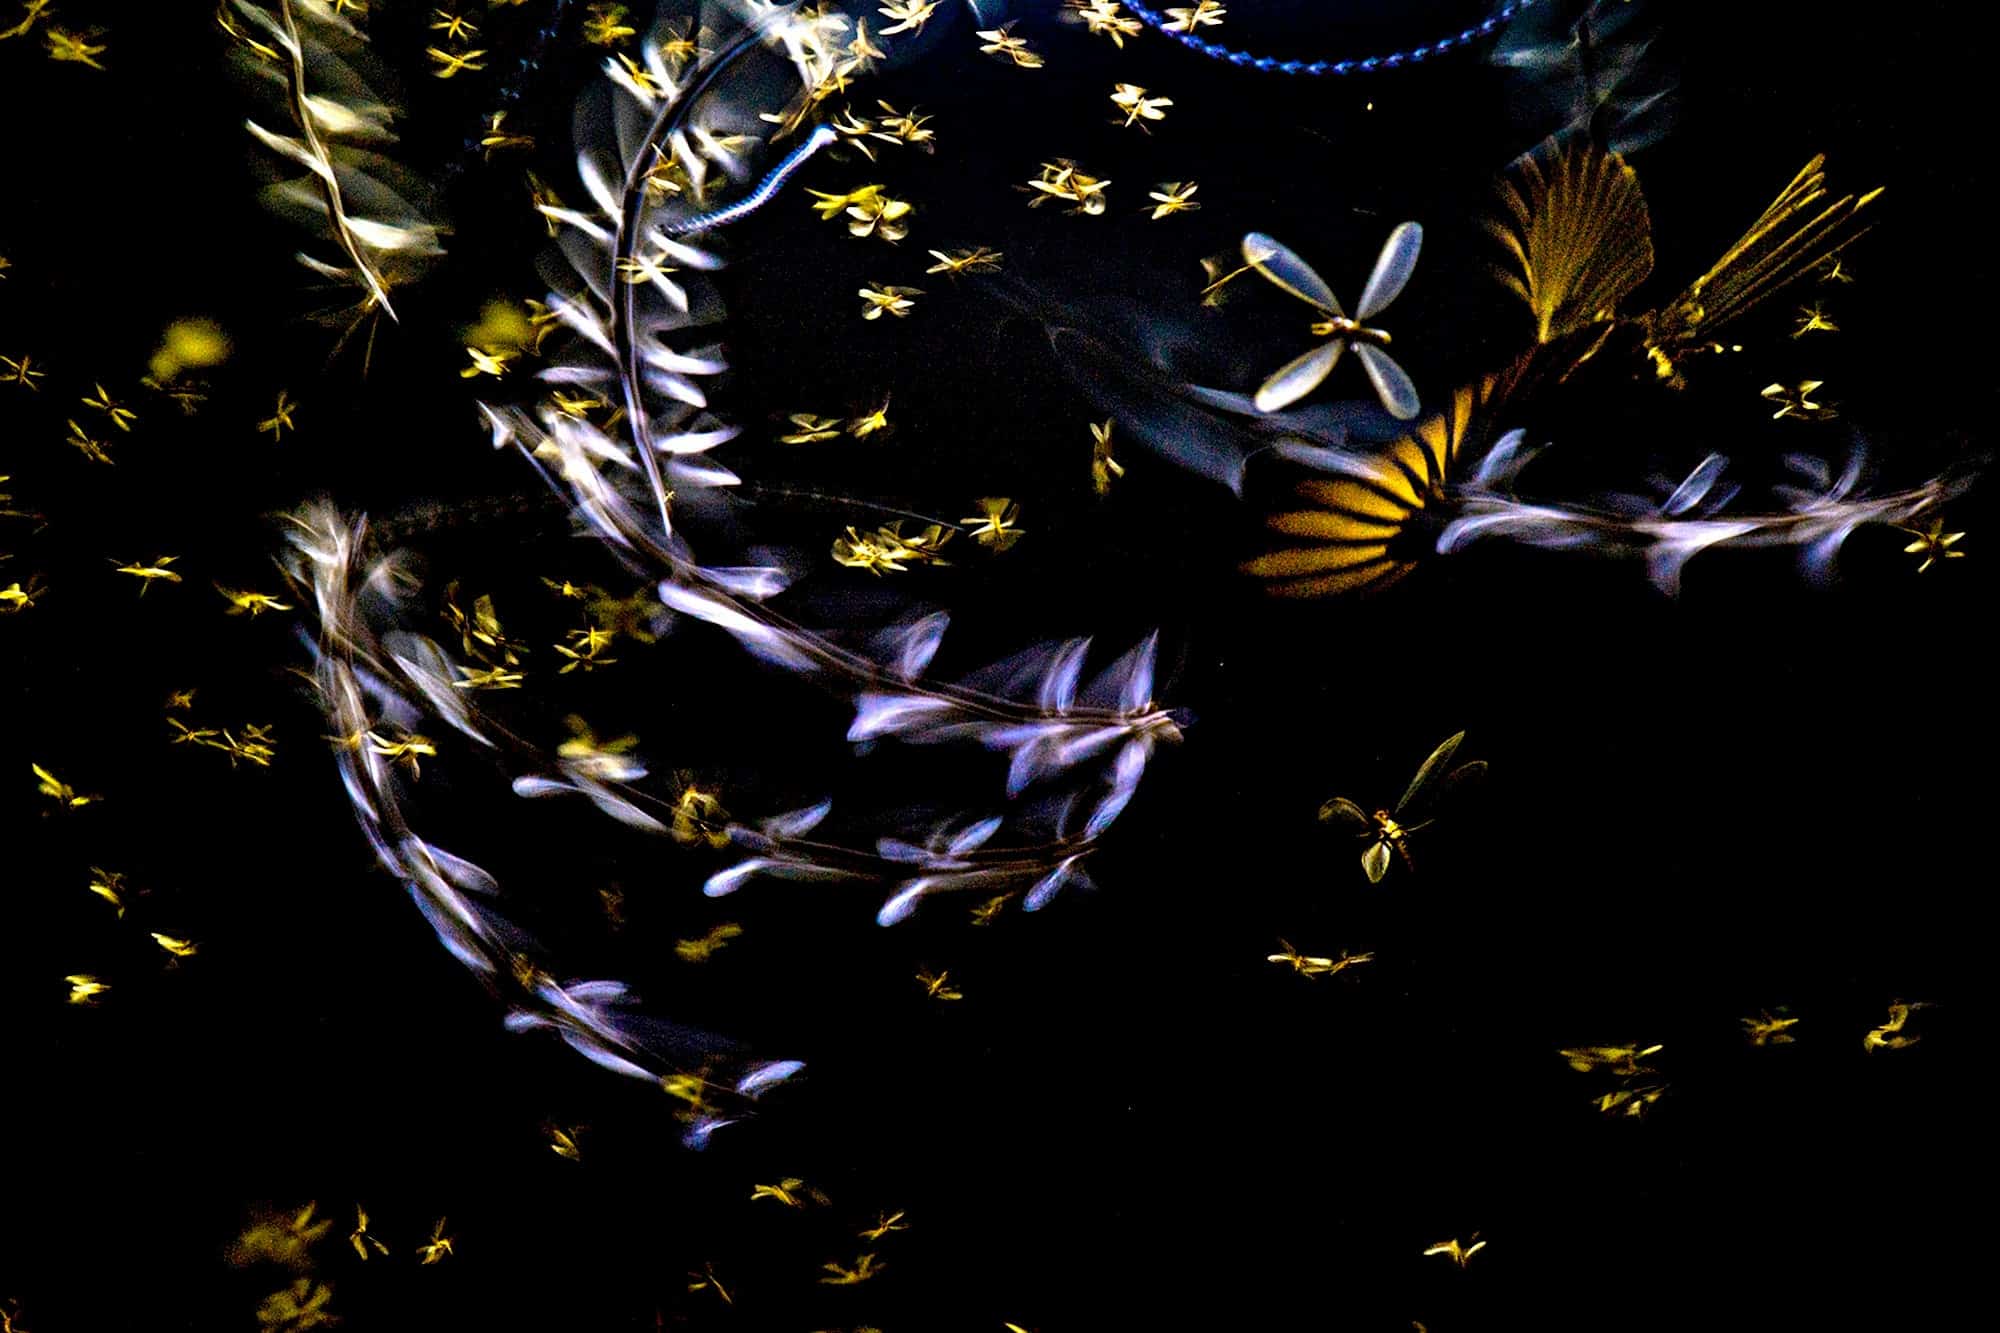 صورة مشاركة في مسابقة التصوير الفوتوغرافي تظهر طائر درانغو يطارد سرباً من النمل الأبيض في مشهد ليلي ضبابي